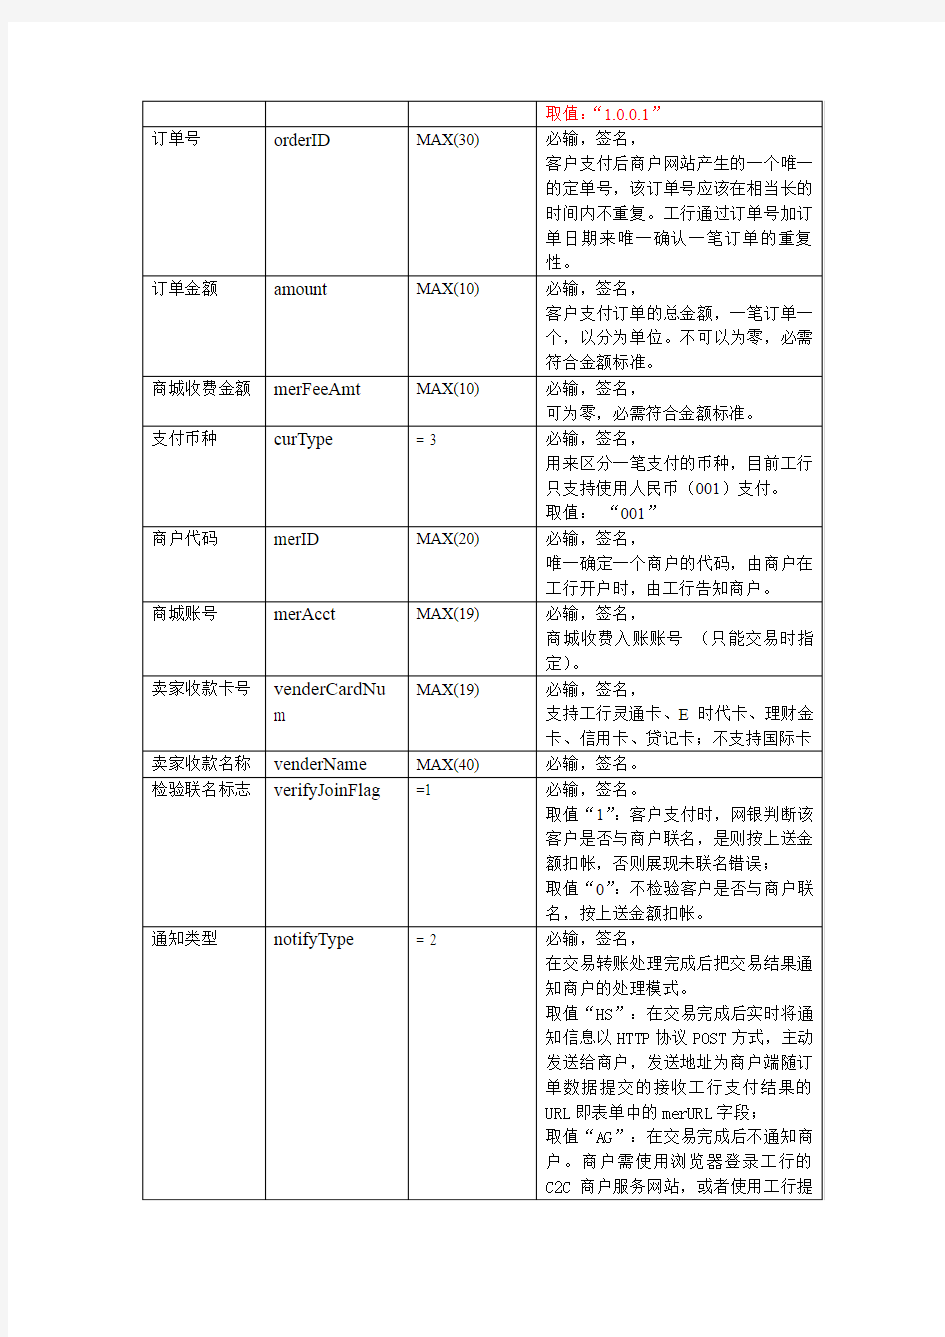 中国工商银行网上银行C2C在线支付接口说明V1.0.0.1